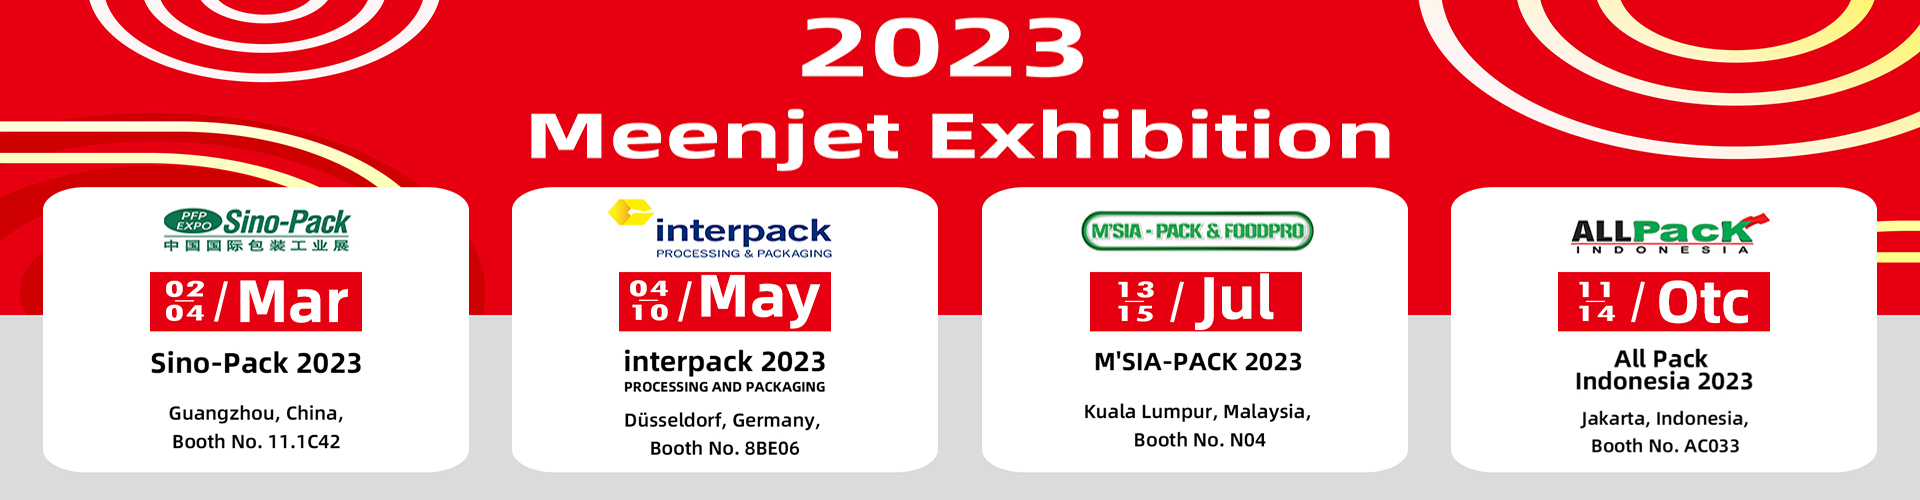 Meenjet Exhibition 2023